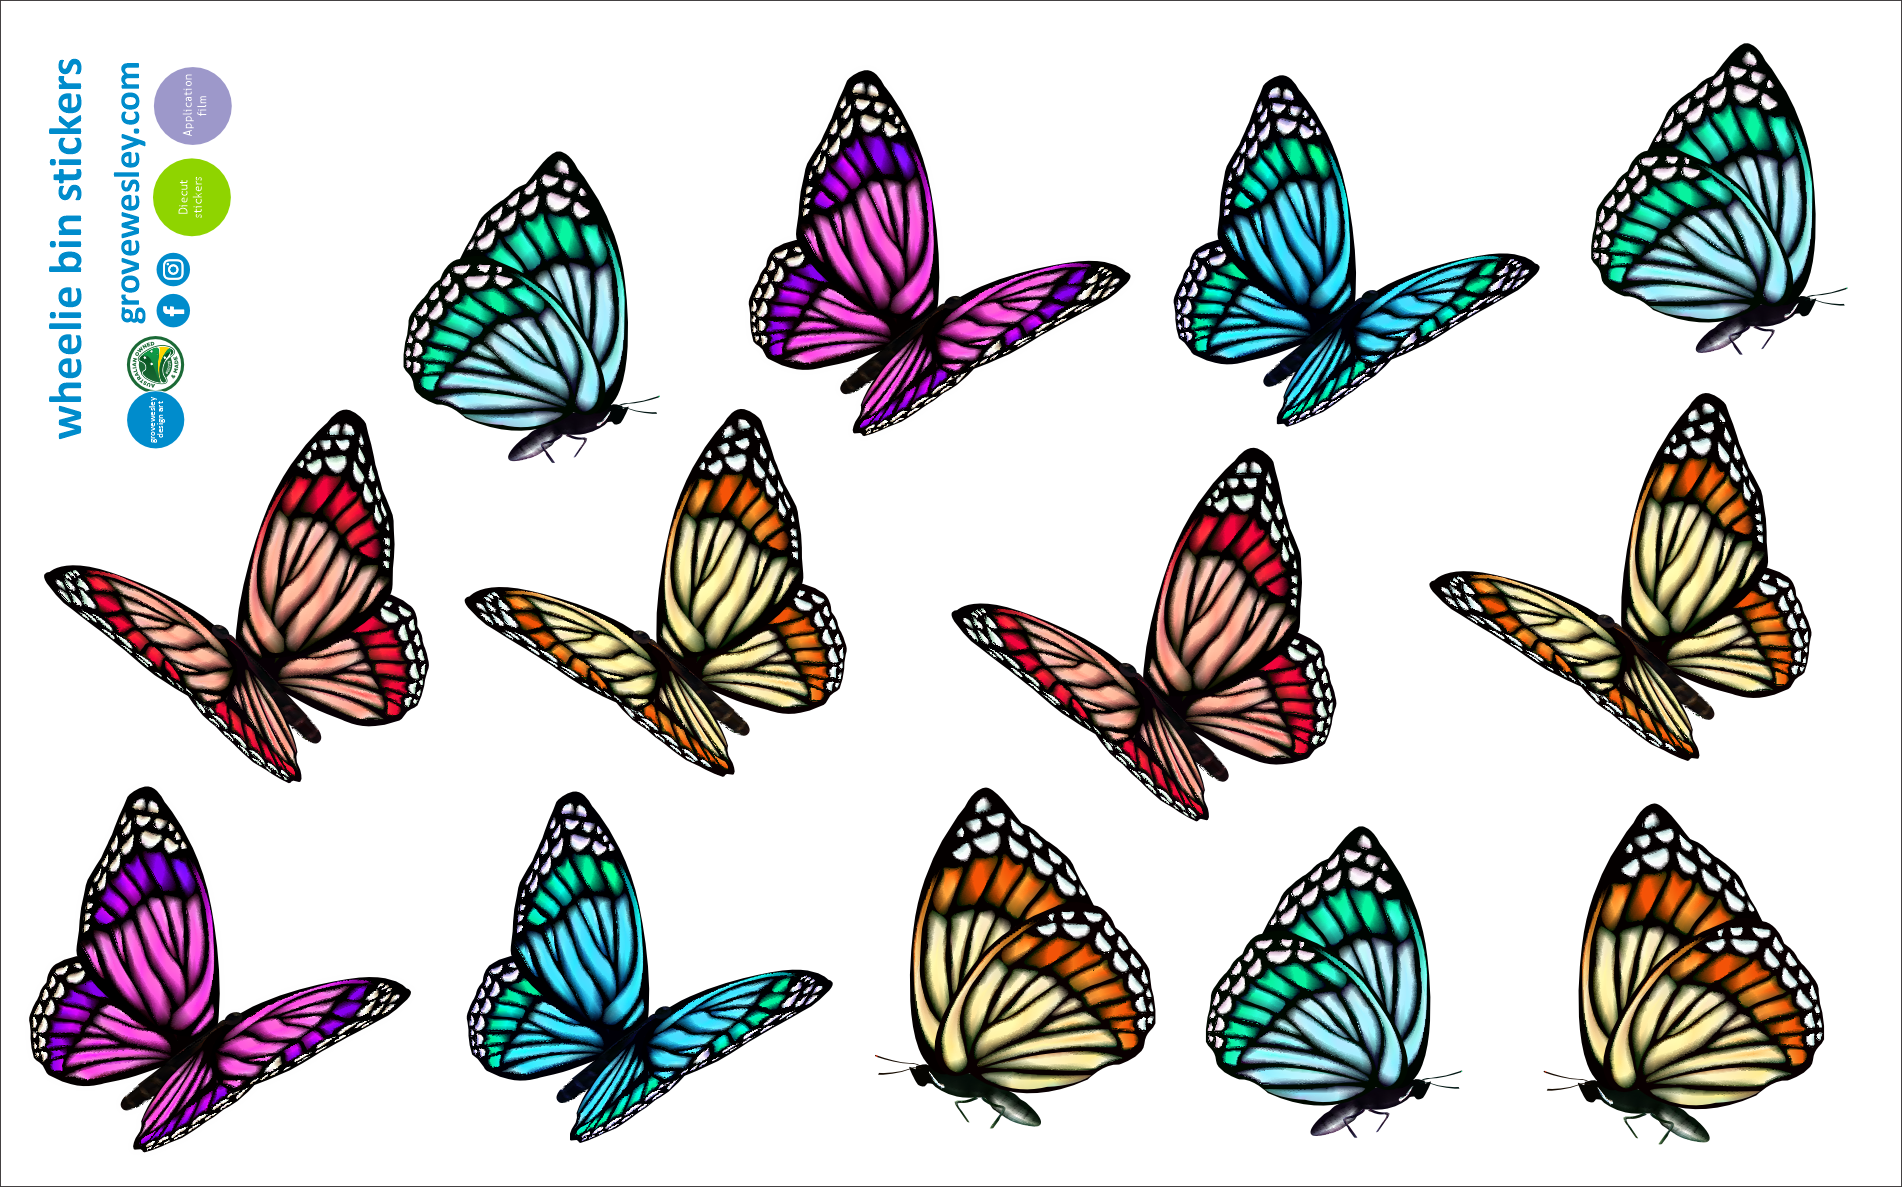 Butterfly stickers for wheelie bins